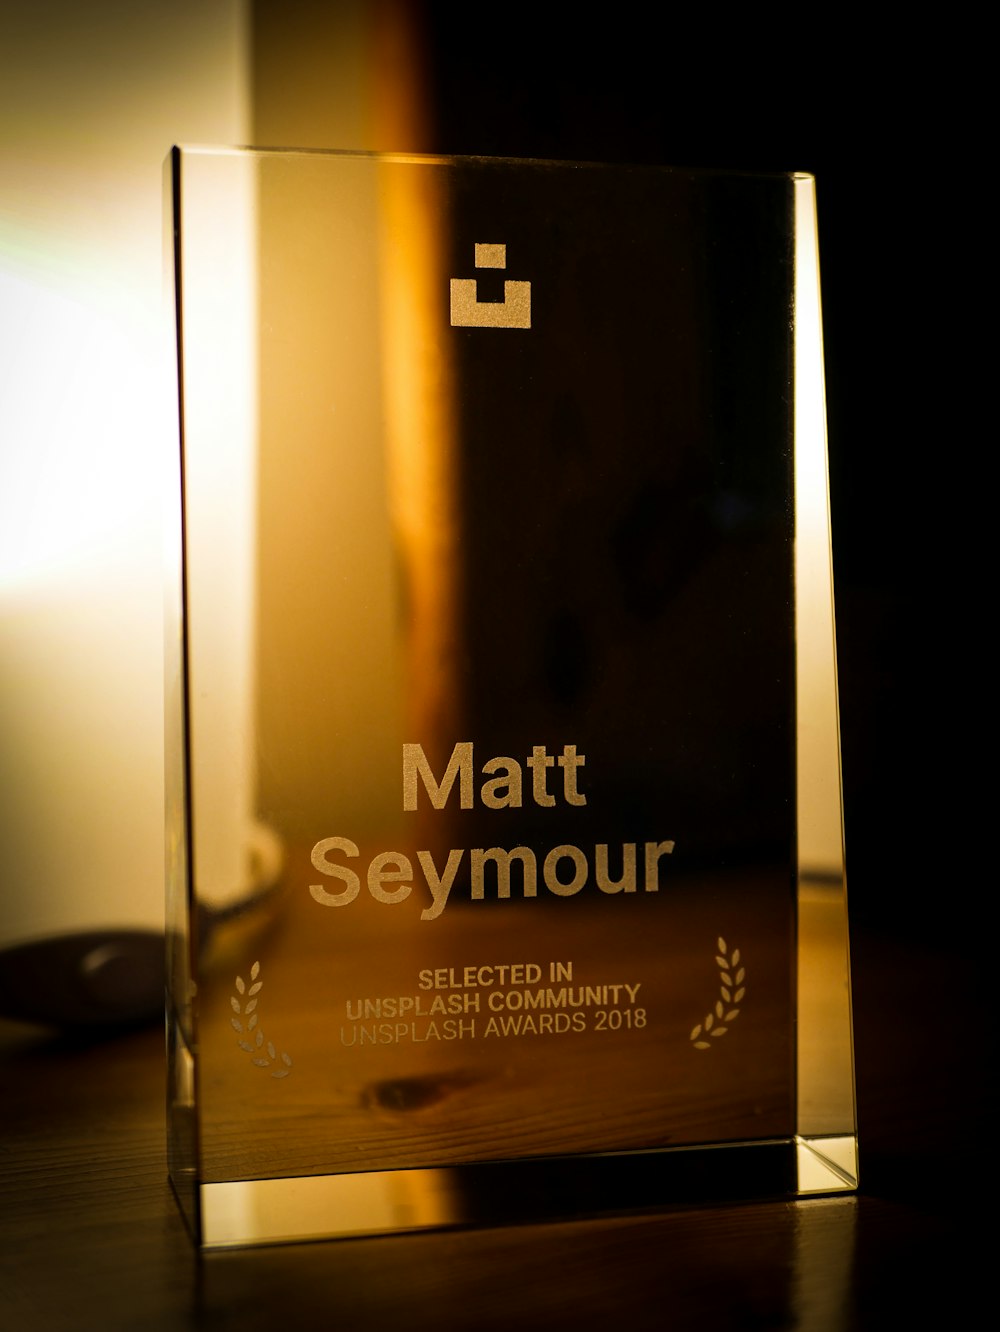 Placca di Matt Seymour sulla scrivania